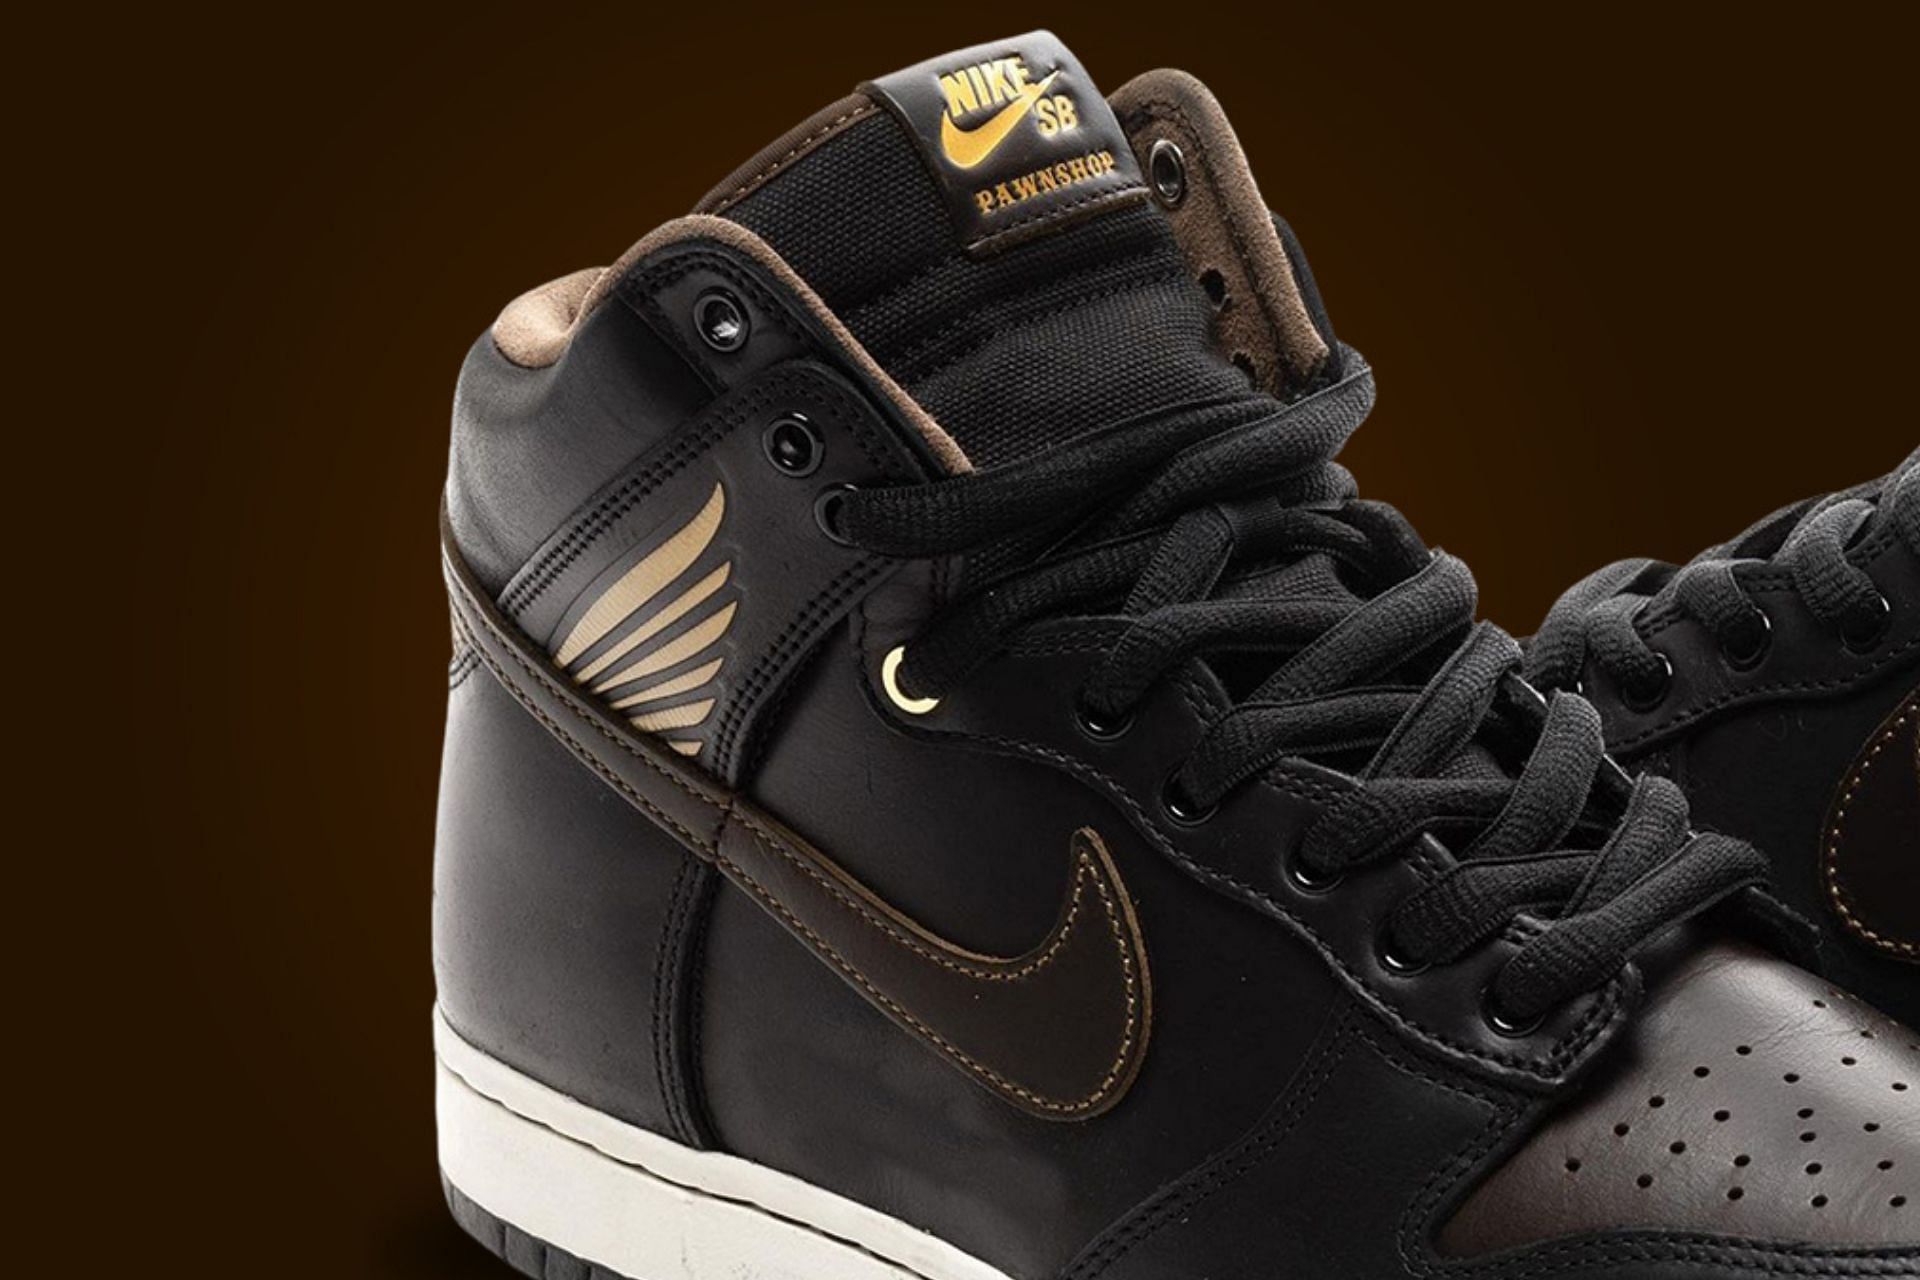 Pawnshop Skate Co. x Nike SB Dunk High shoes (Image via Instagram/@prvt.selection)